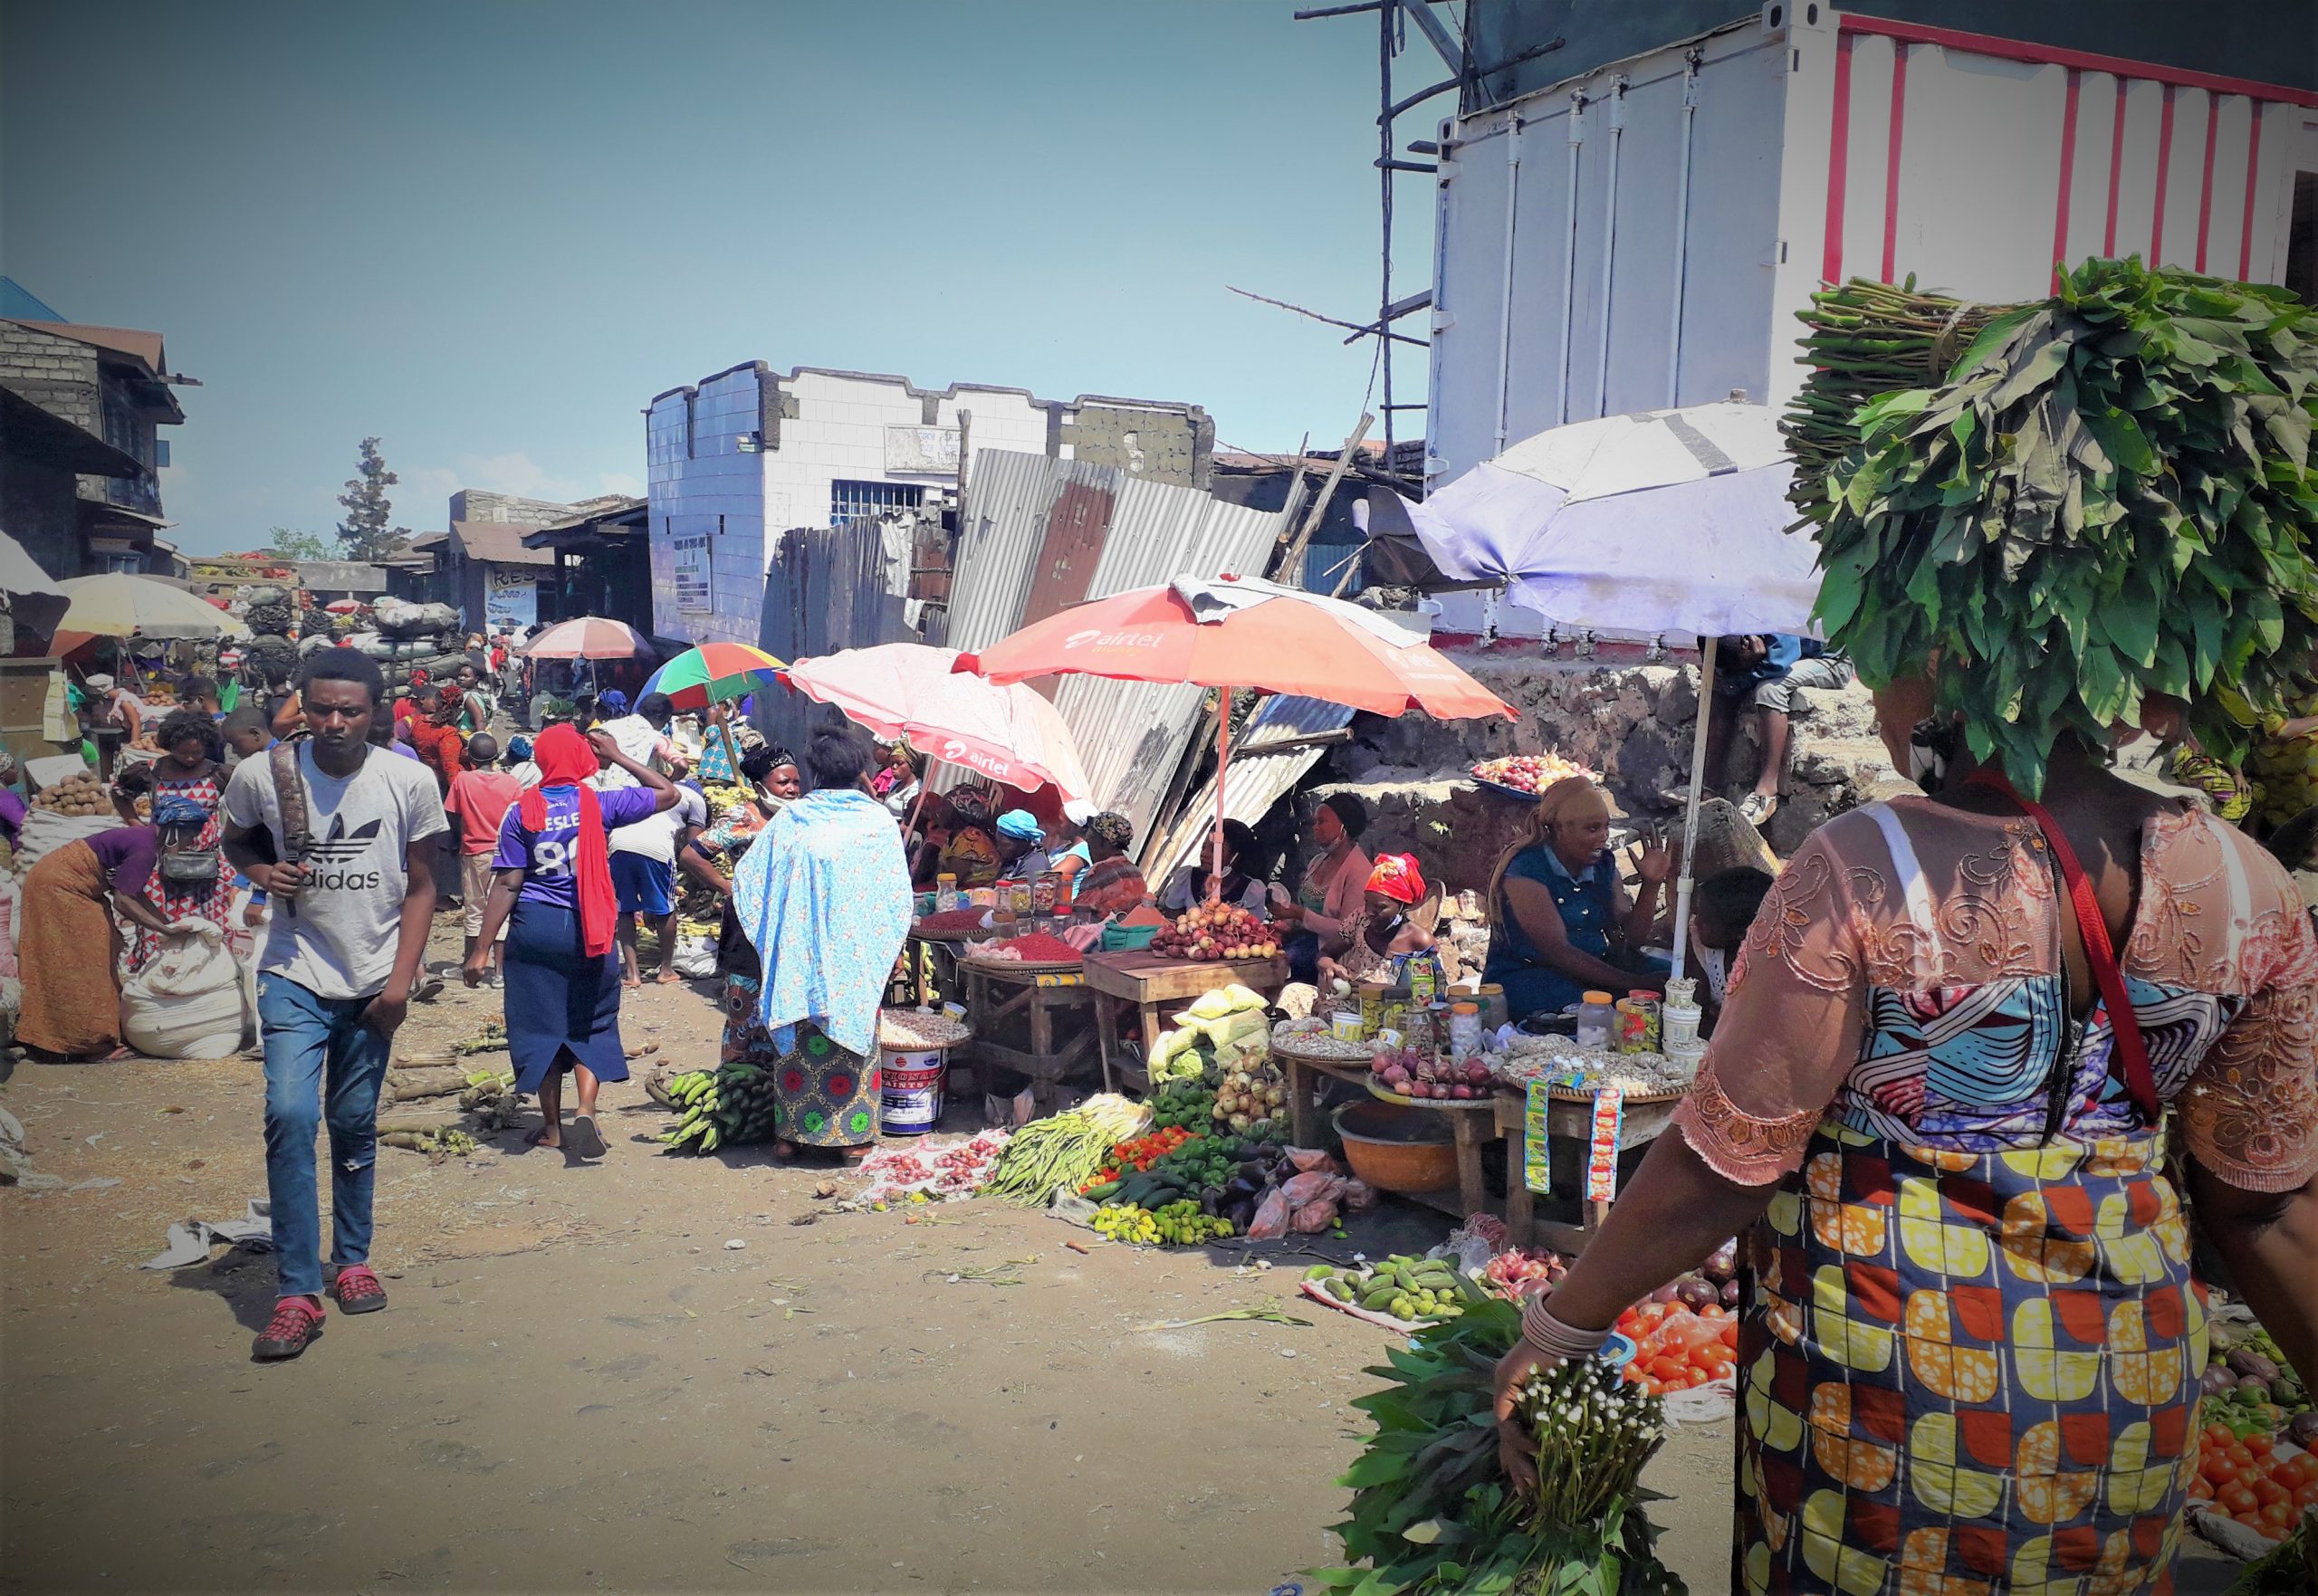 Lavage de mains et distanciation : gestes barrières difficiles à respecter dans les marchés à Goma